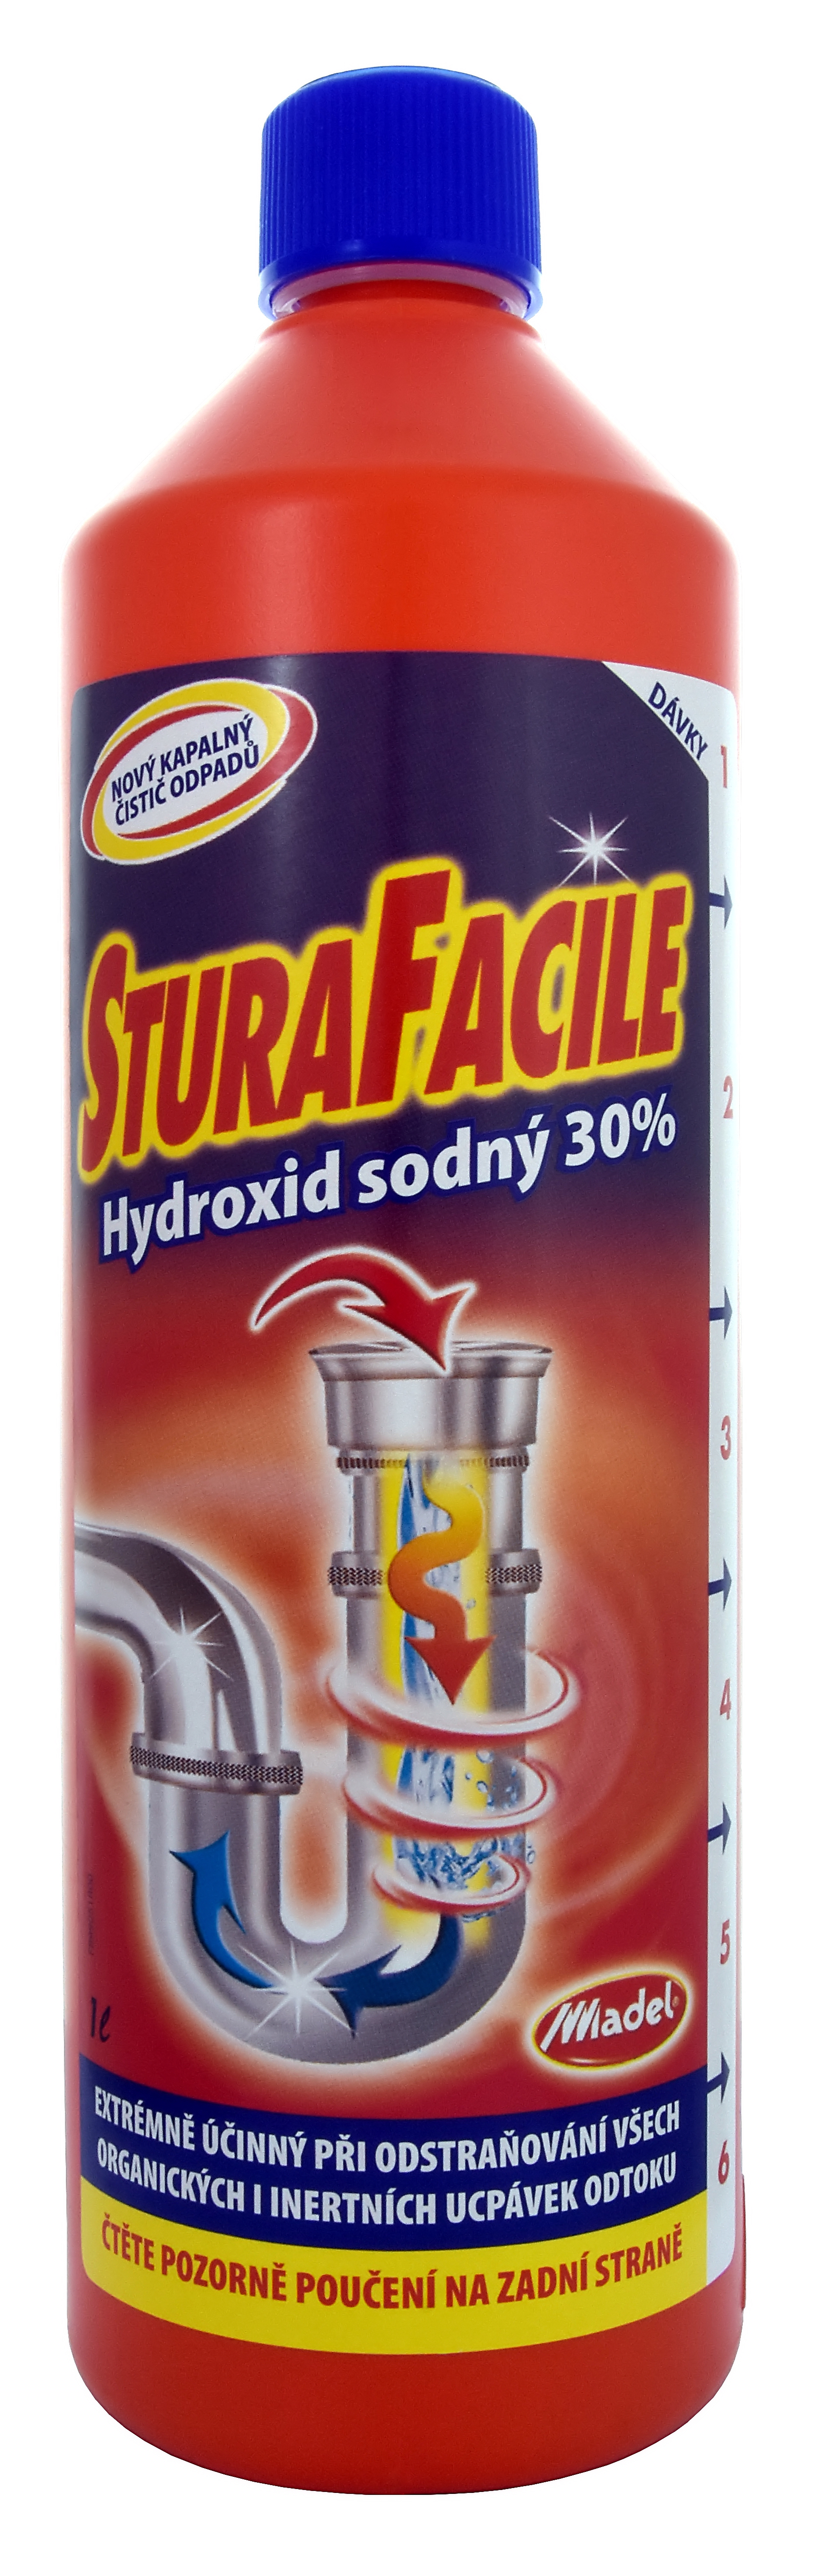 Stura Facile hydroxid sodný 30% čistič odpadů 1 l